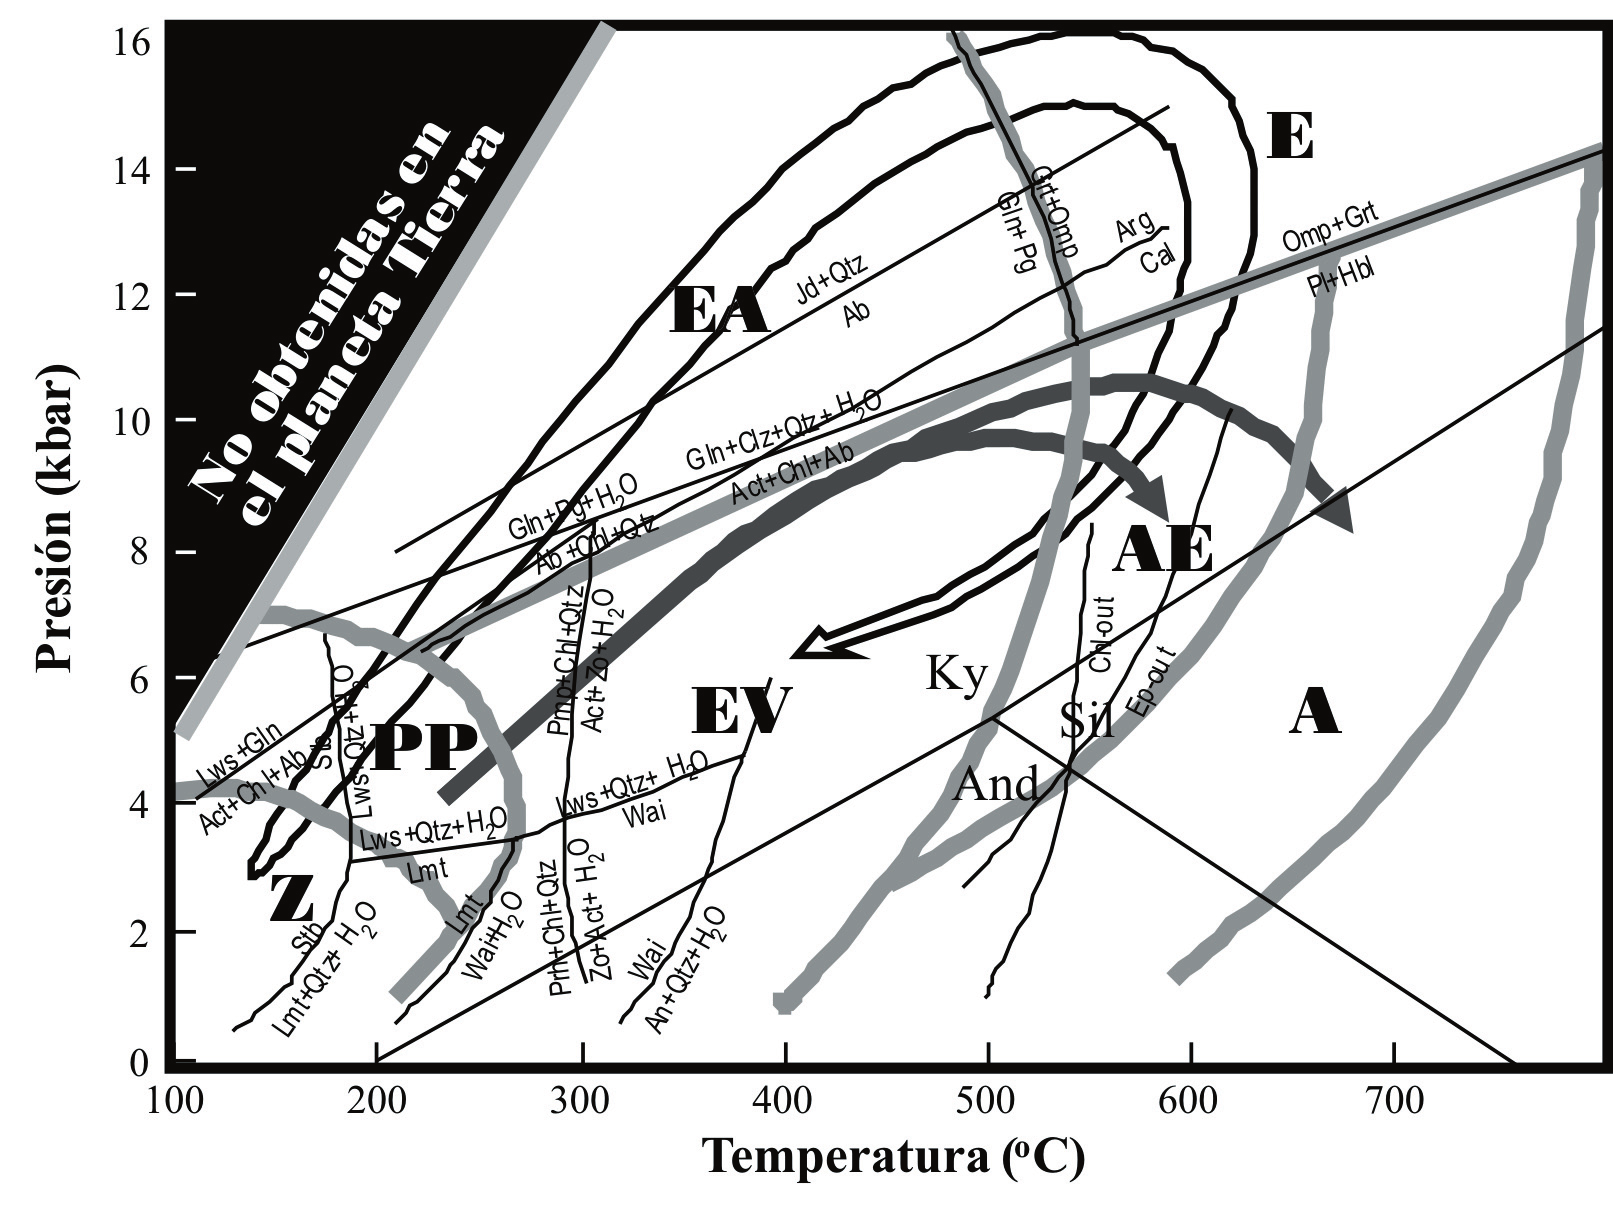 MIYASHIRO (1994) ha definido tres categorías de metamorﬁsmo con relación a las relaciones de estabilidad de los polimorfos de Al2SiO5, anfíbol glaucofánico y jadeita + cuarzo: (1) metamorﬁsmo de baja